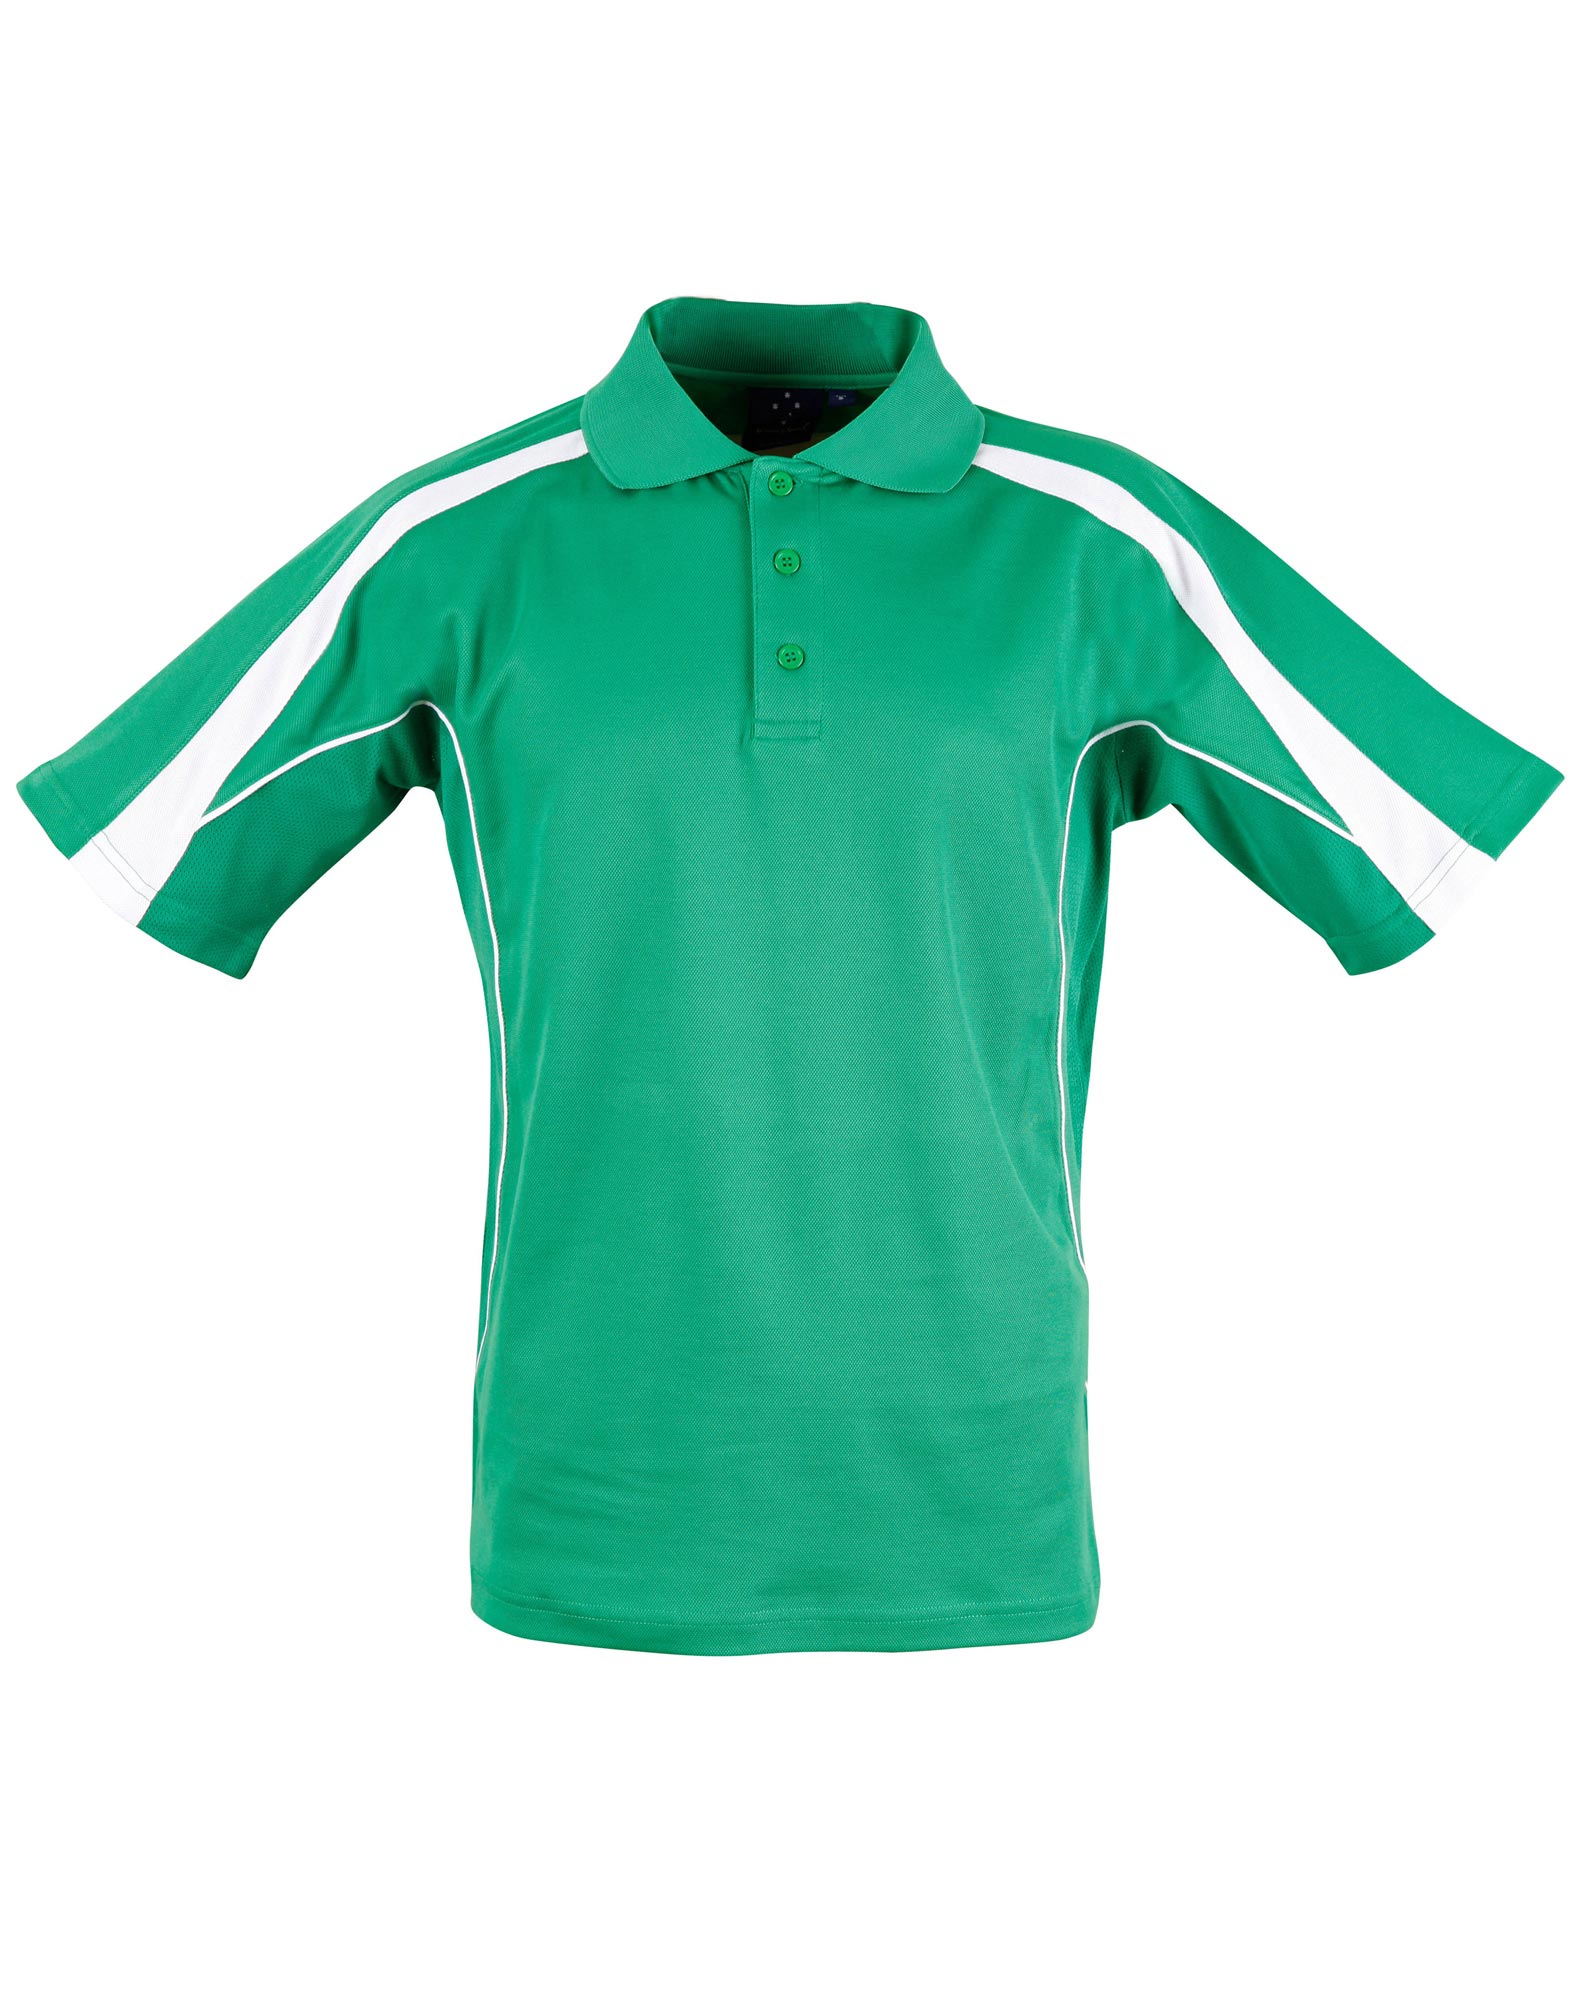 Custom (Emerald Green White) Legend Polo Shirts for Men Online Perth Australia